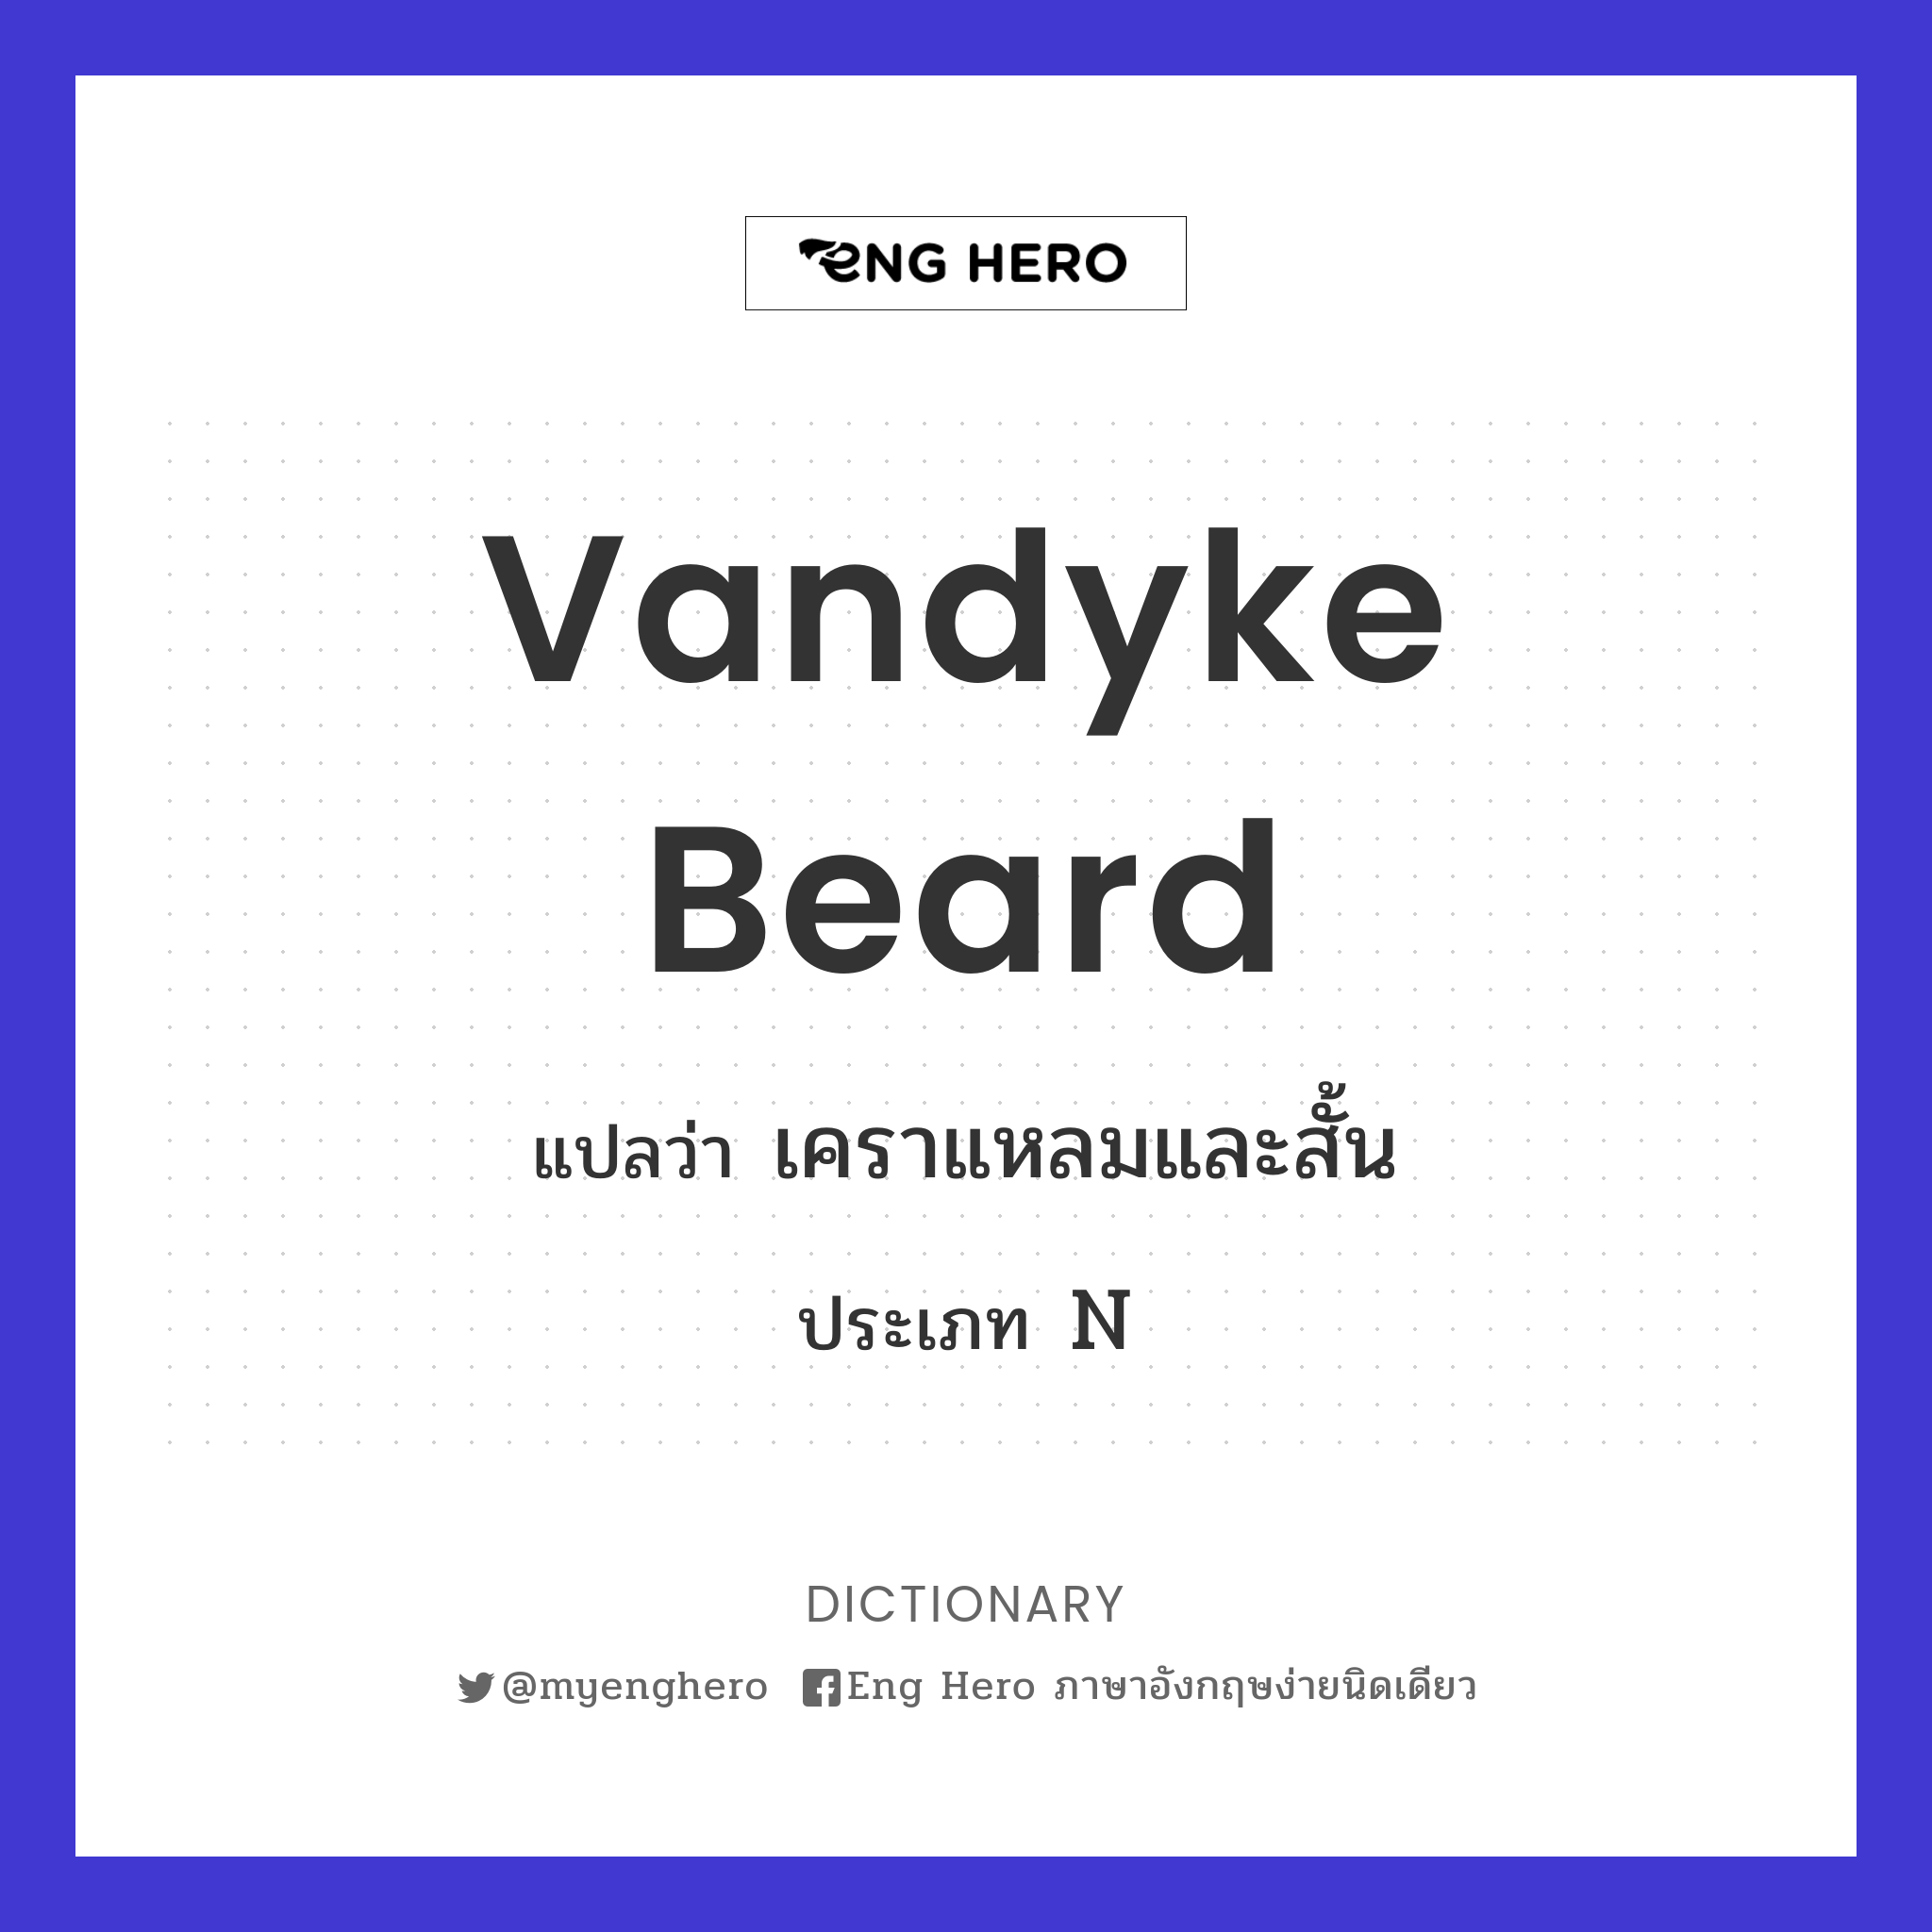 Vandyke beard